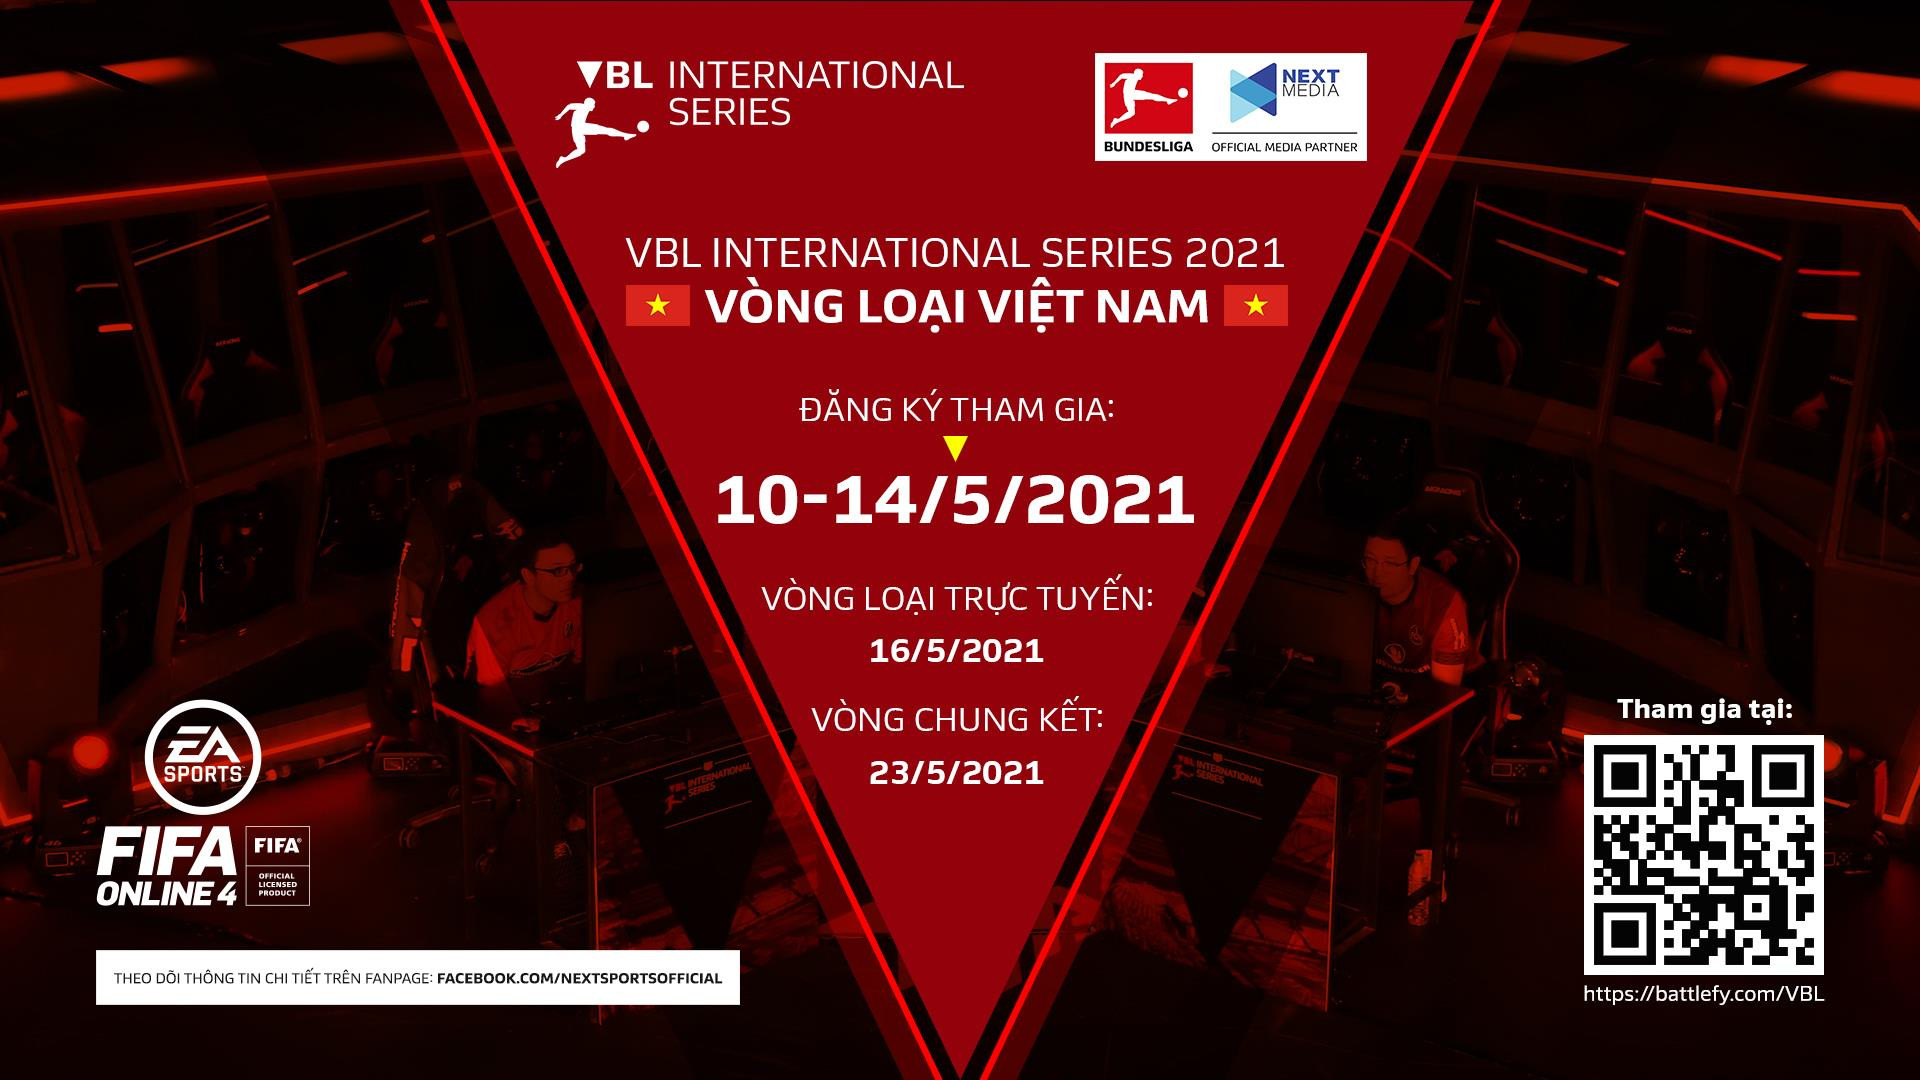 Tranh tài cùng game thủ bốn phương tại VBL International Series 2021 - 1